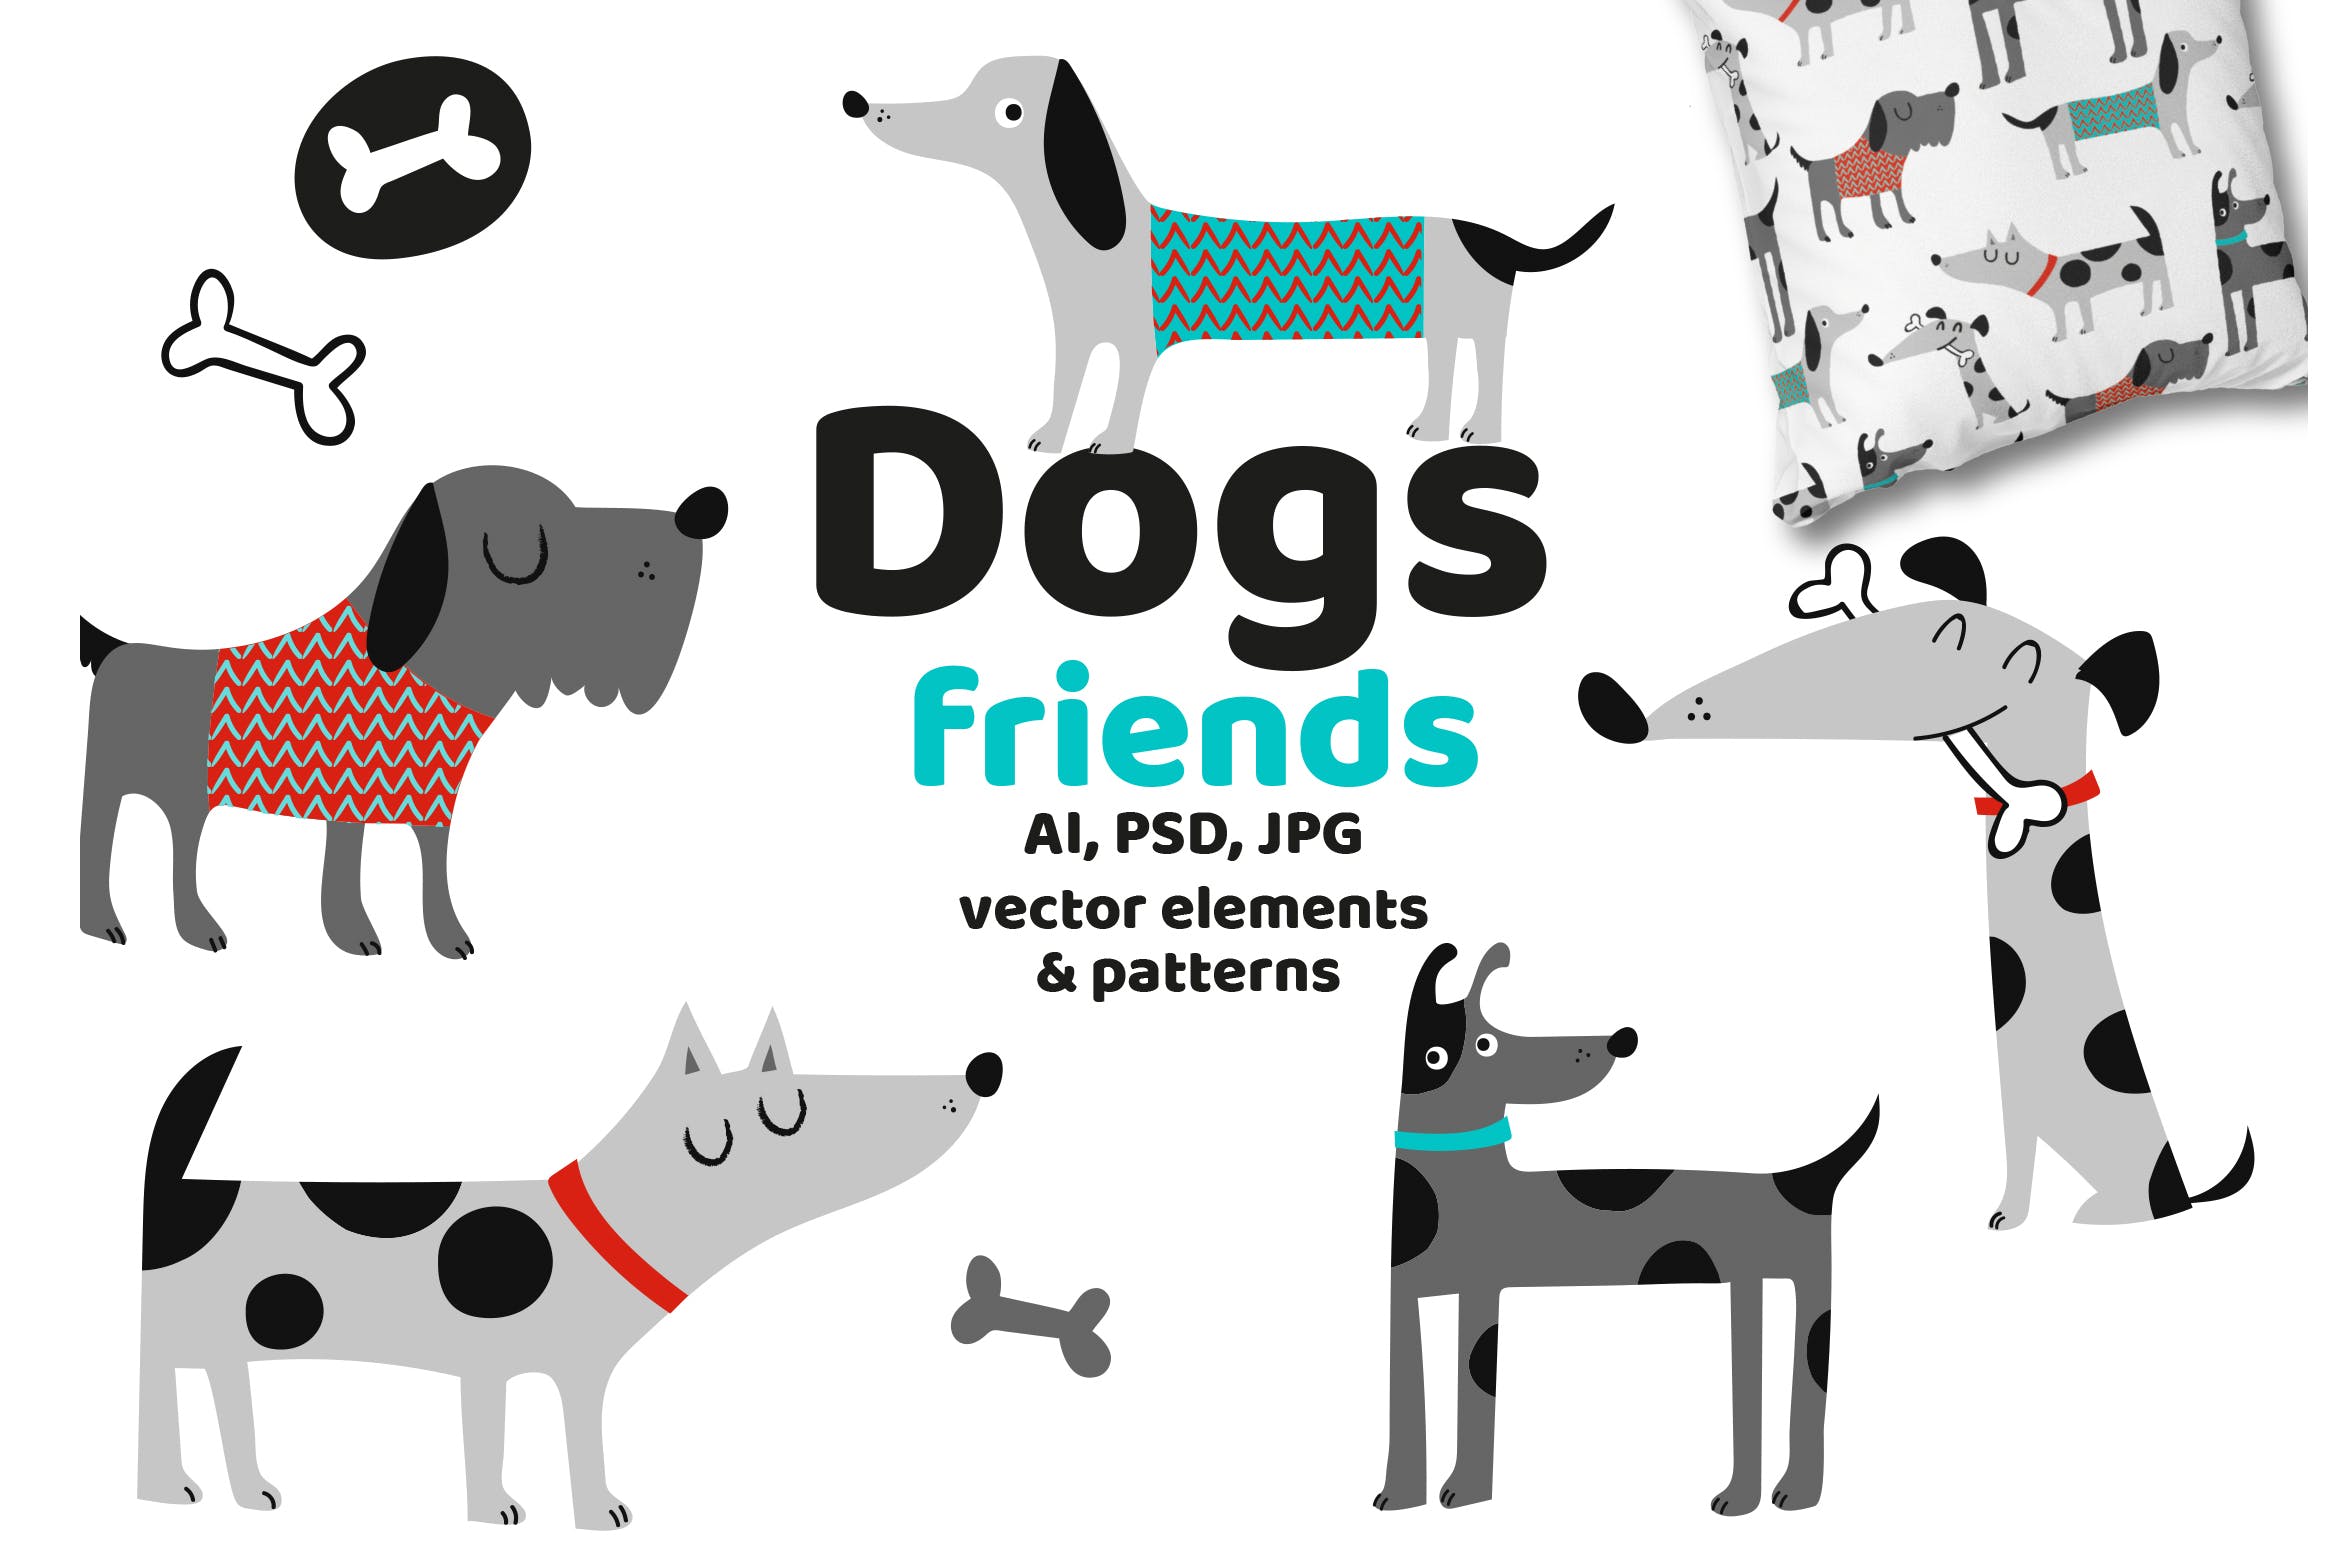 可爱卡通动物手绘图案背景素材库精选 Dogs Friends插图